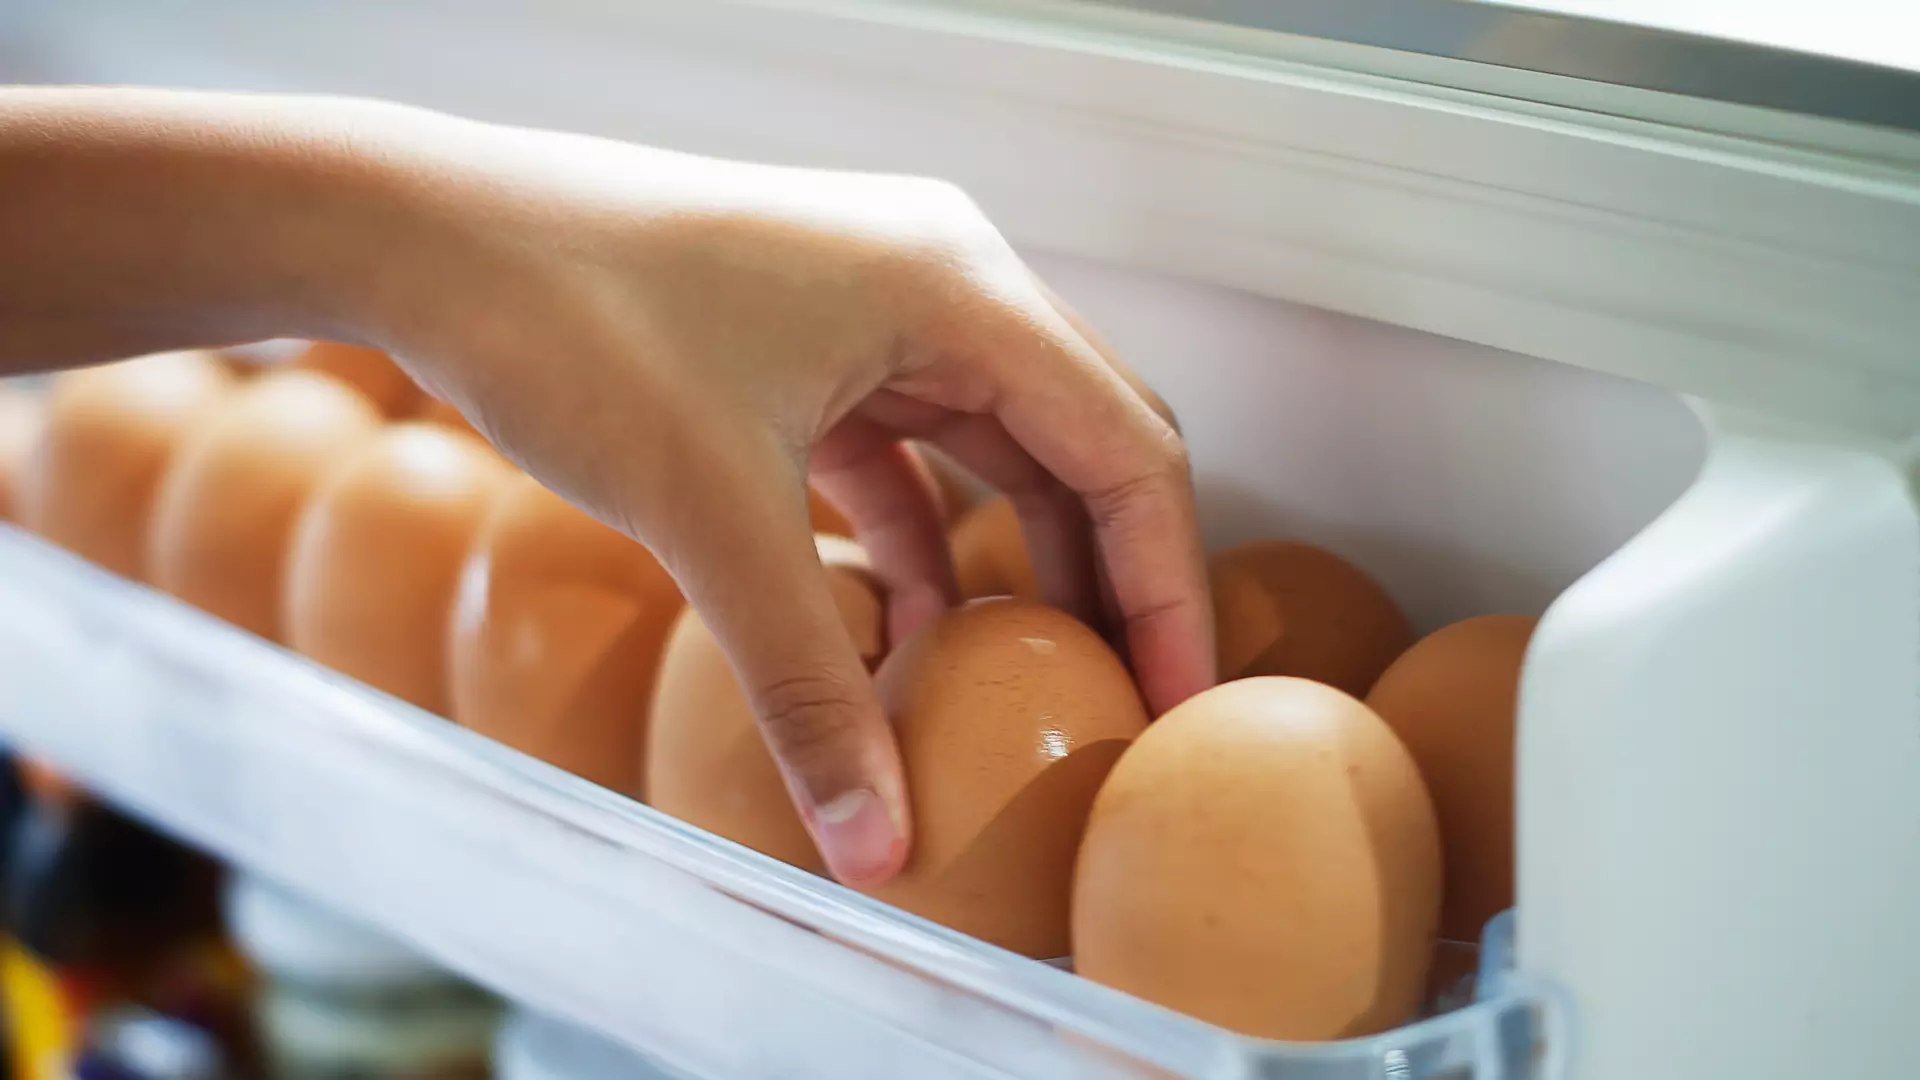 Czy jajka są zdrowe?